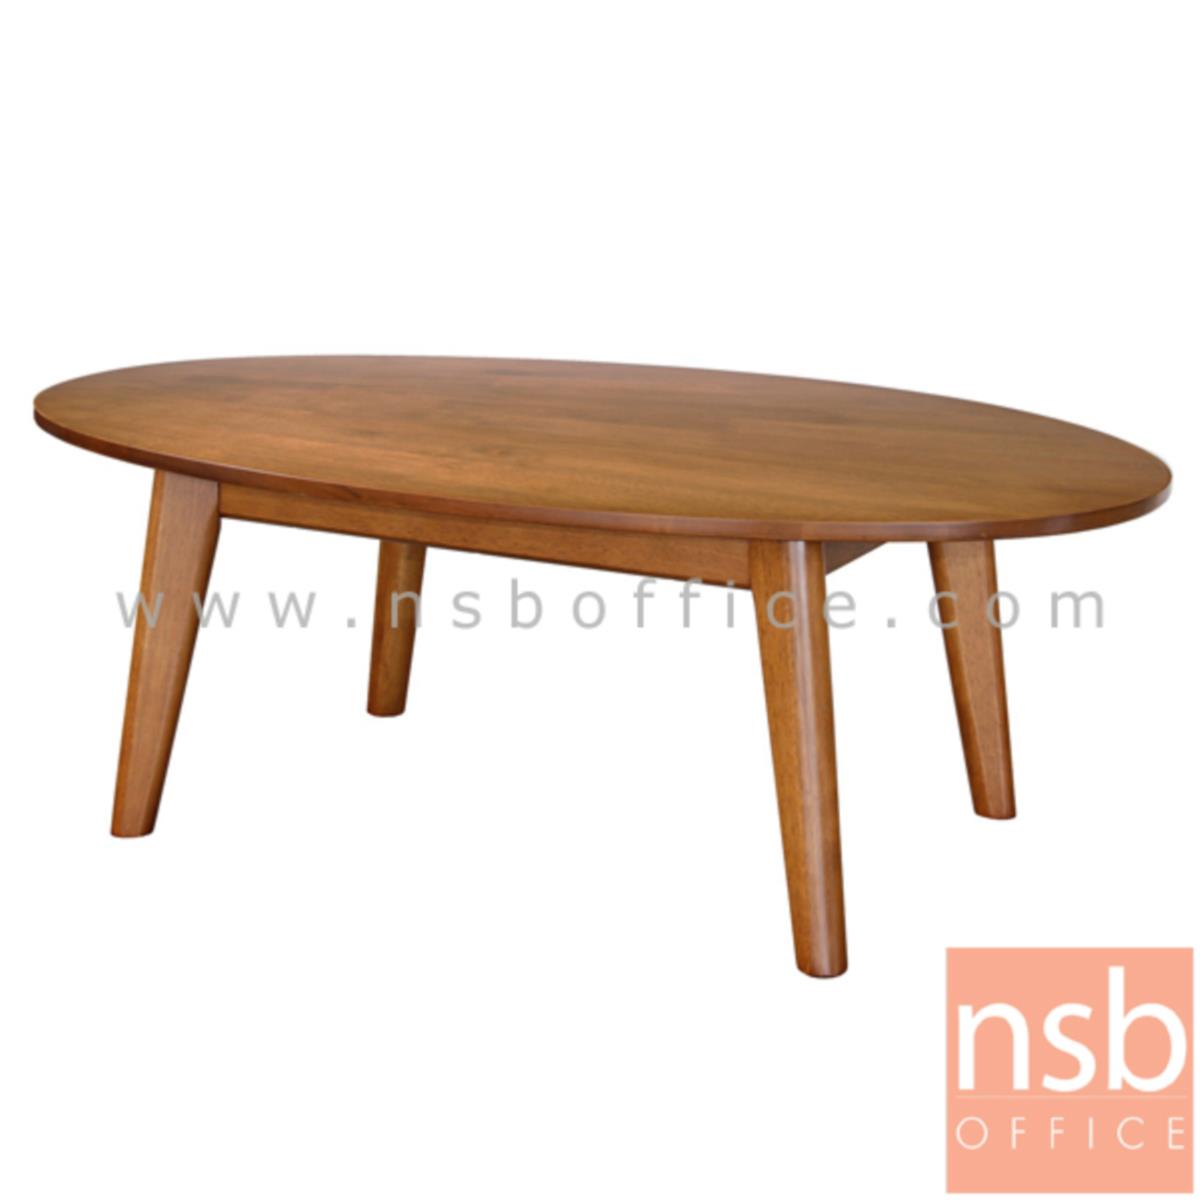 B13A220:โต๊ะกลางไม้ยางพาราทรงวงรี  รุ่น HOUSE-0101 ขนาด 91.5W cm. 